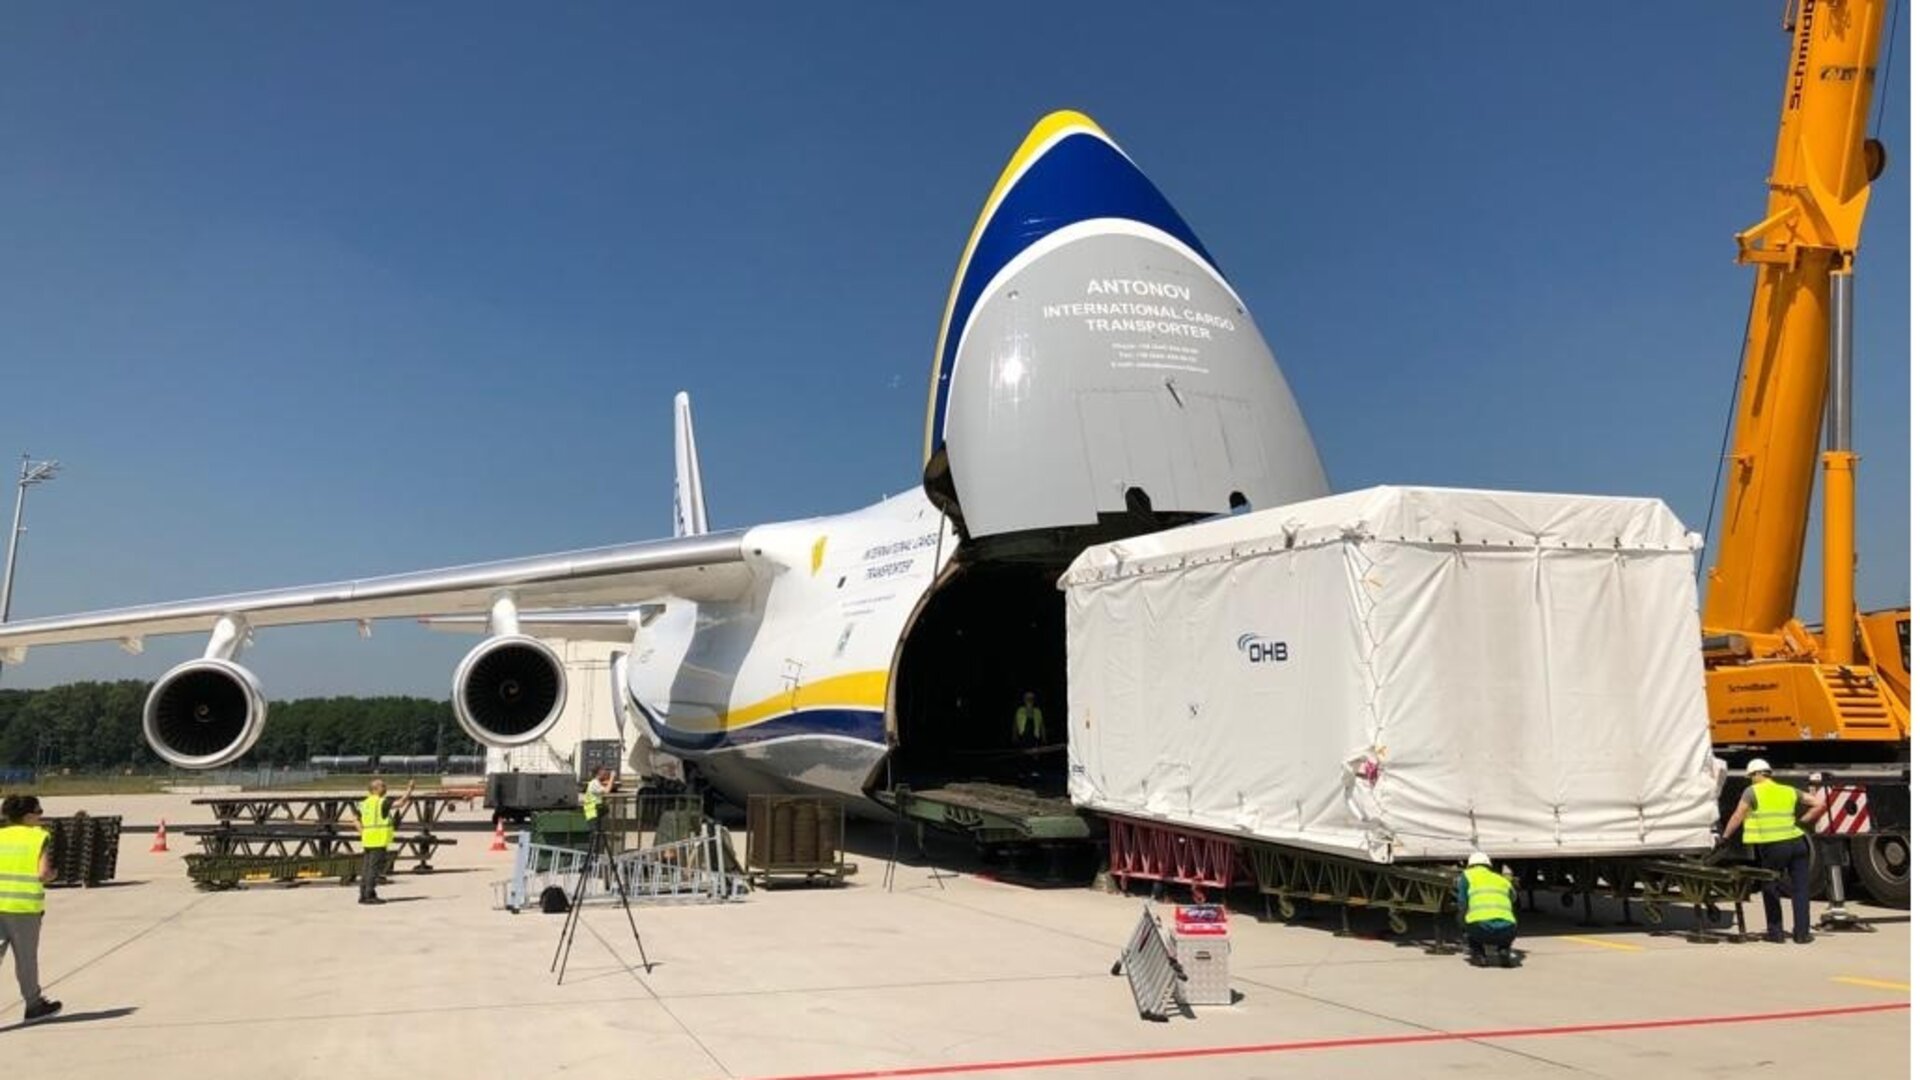 EDRS-C satellite enters Antonov cargo plane